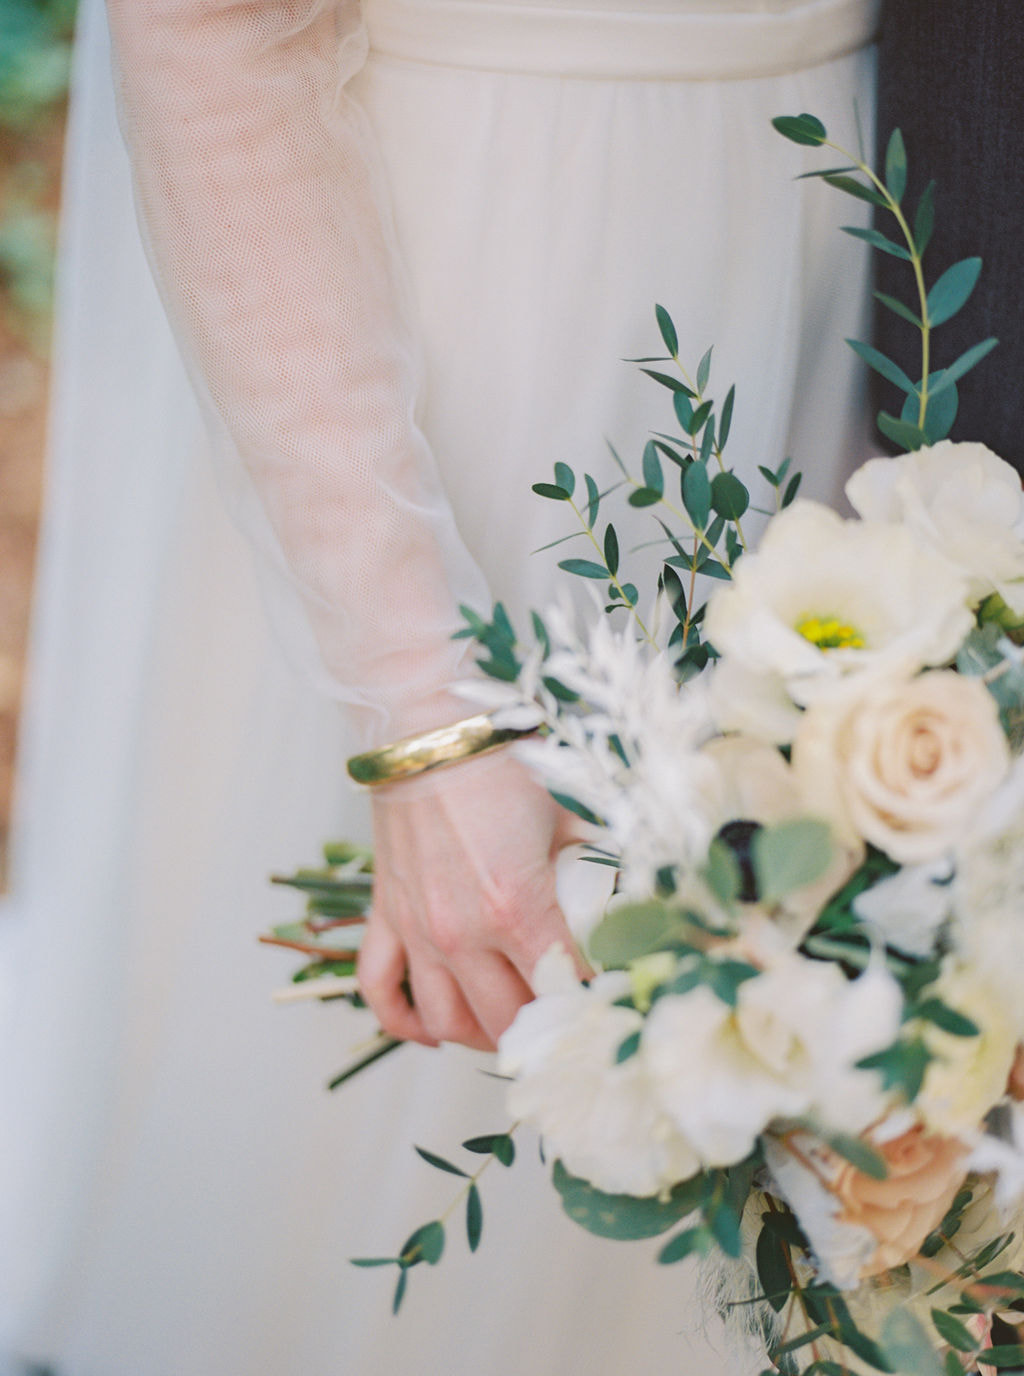 Bridal details with gold bracelet